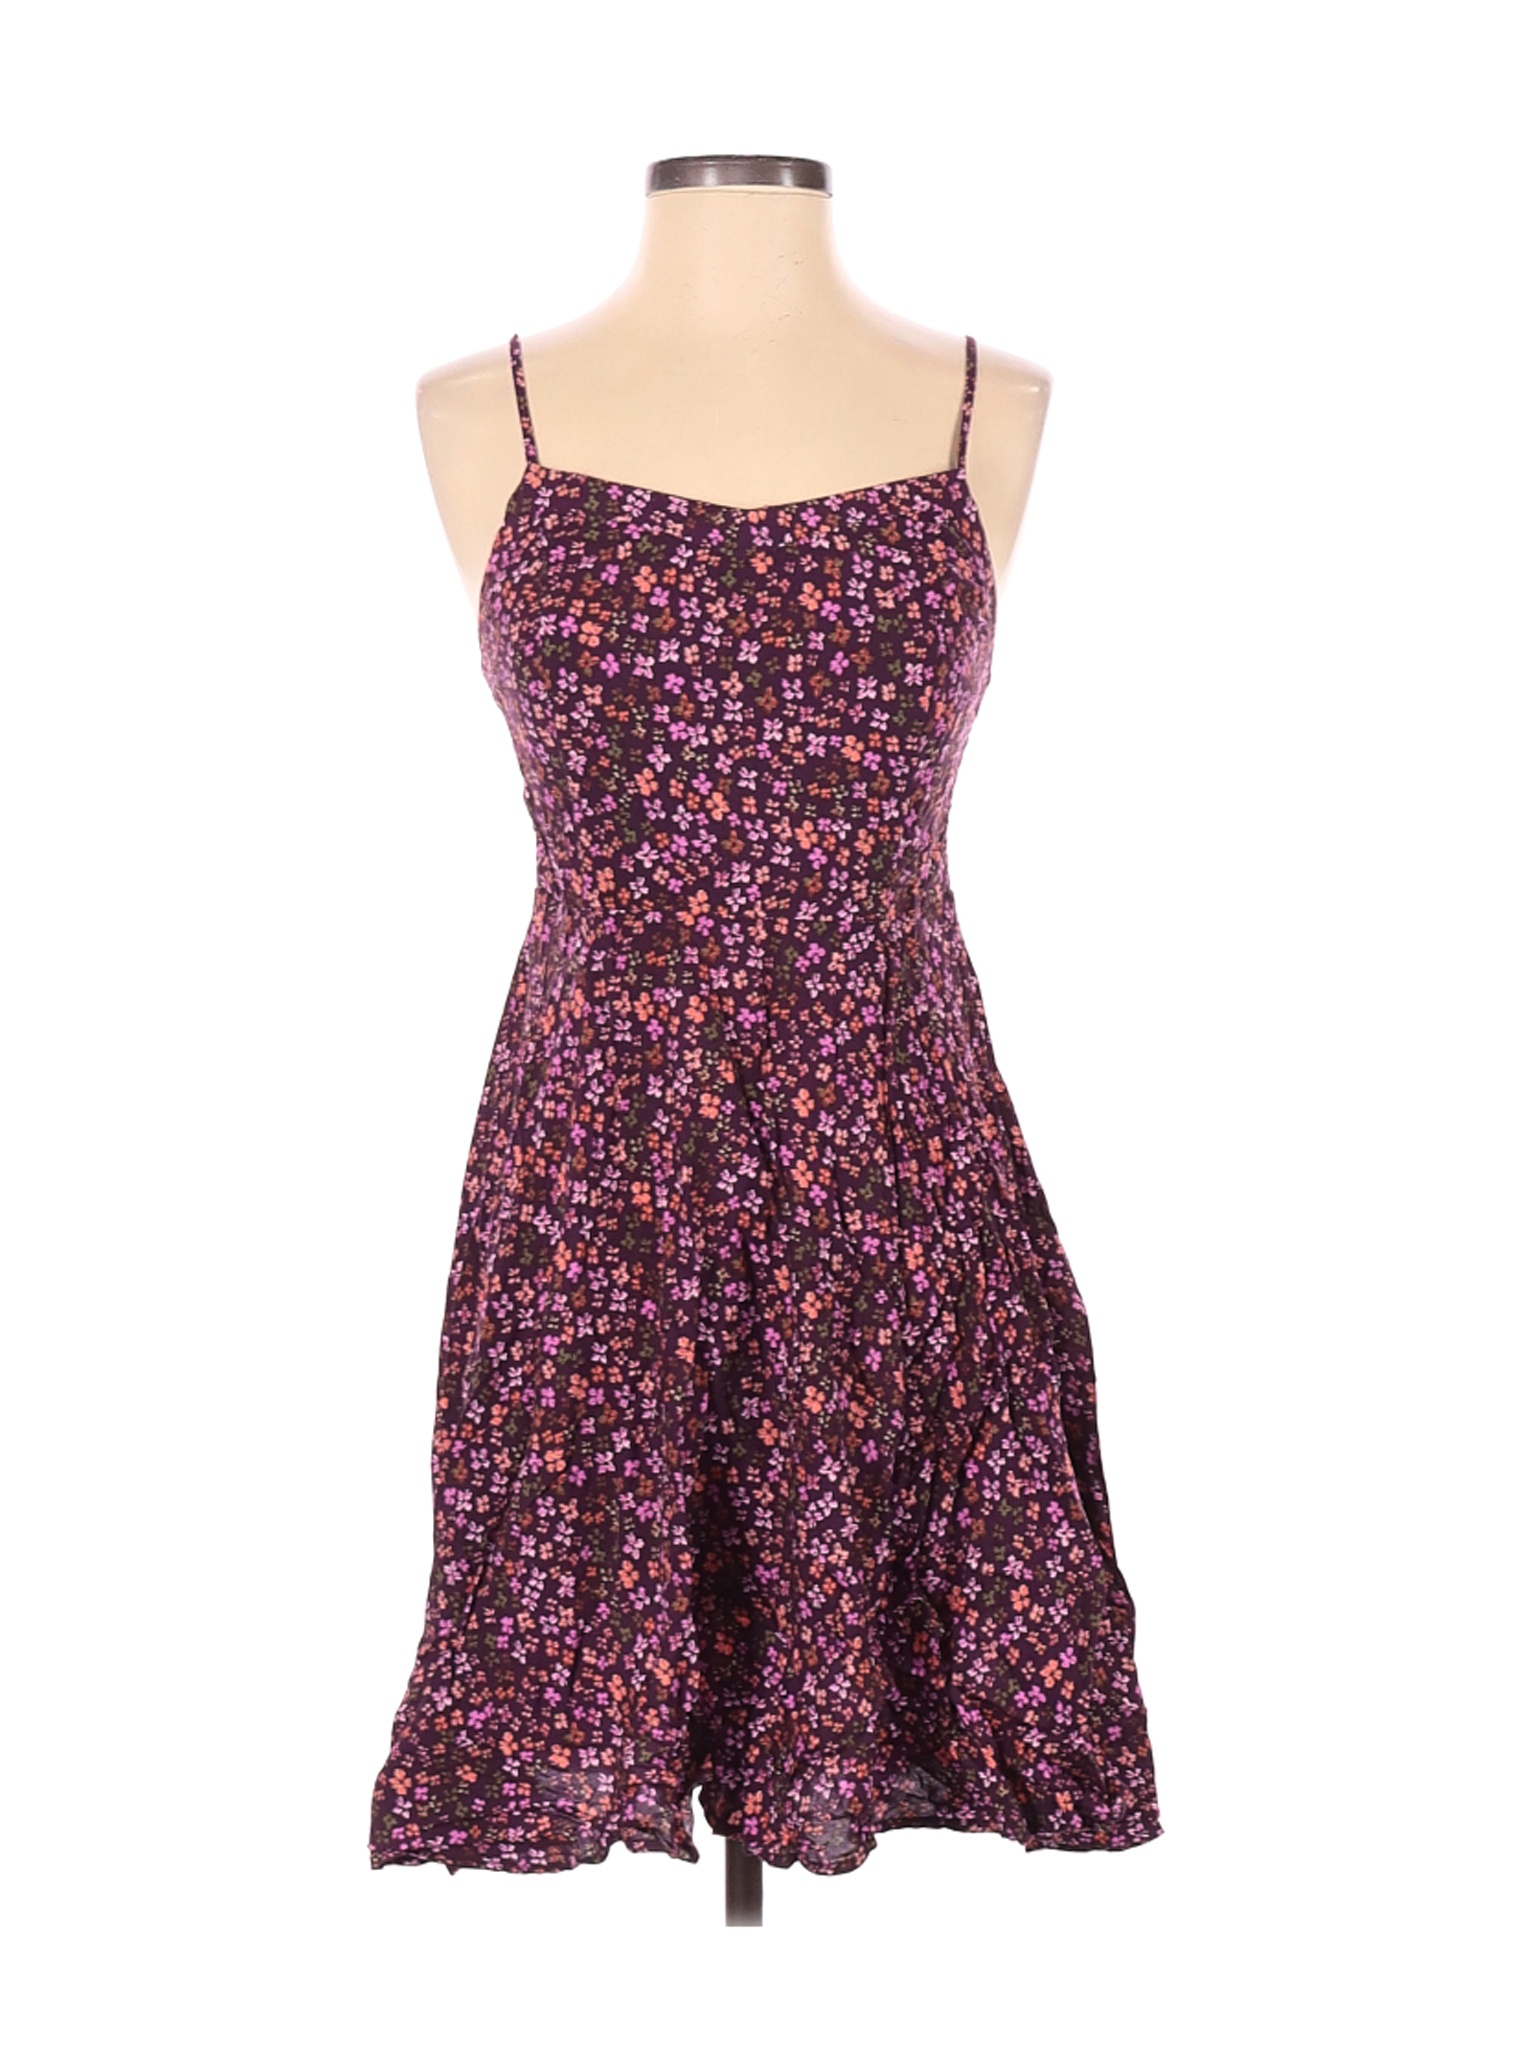 Old Navy Women Purple Casual Dress XS | eBay